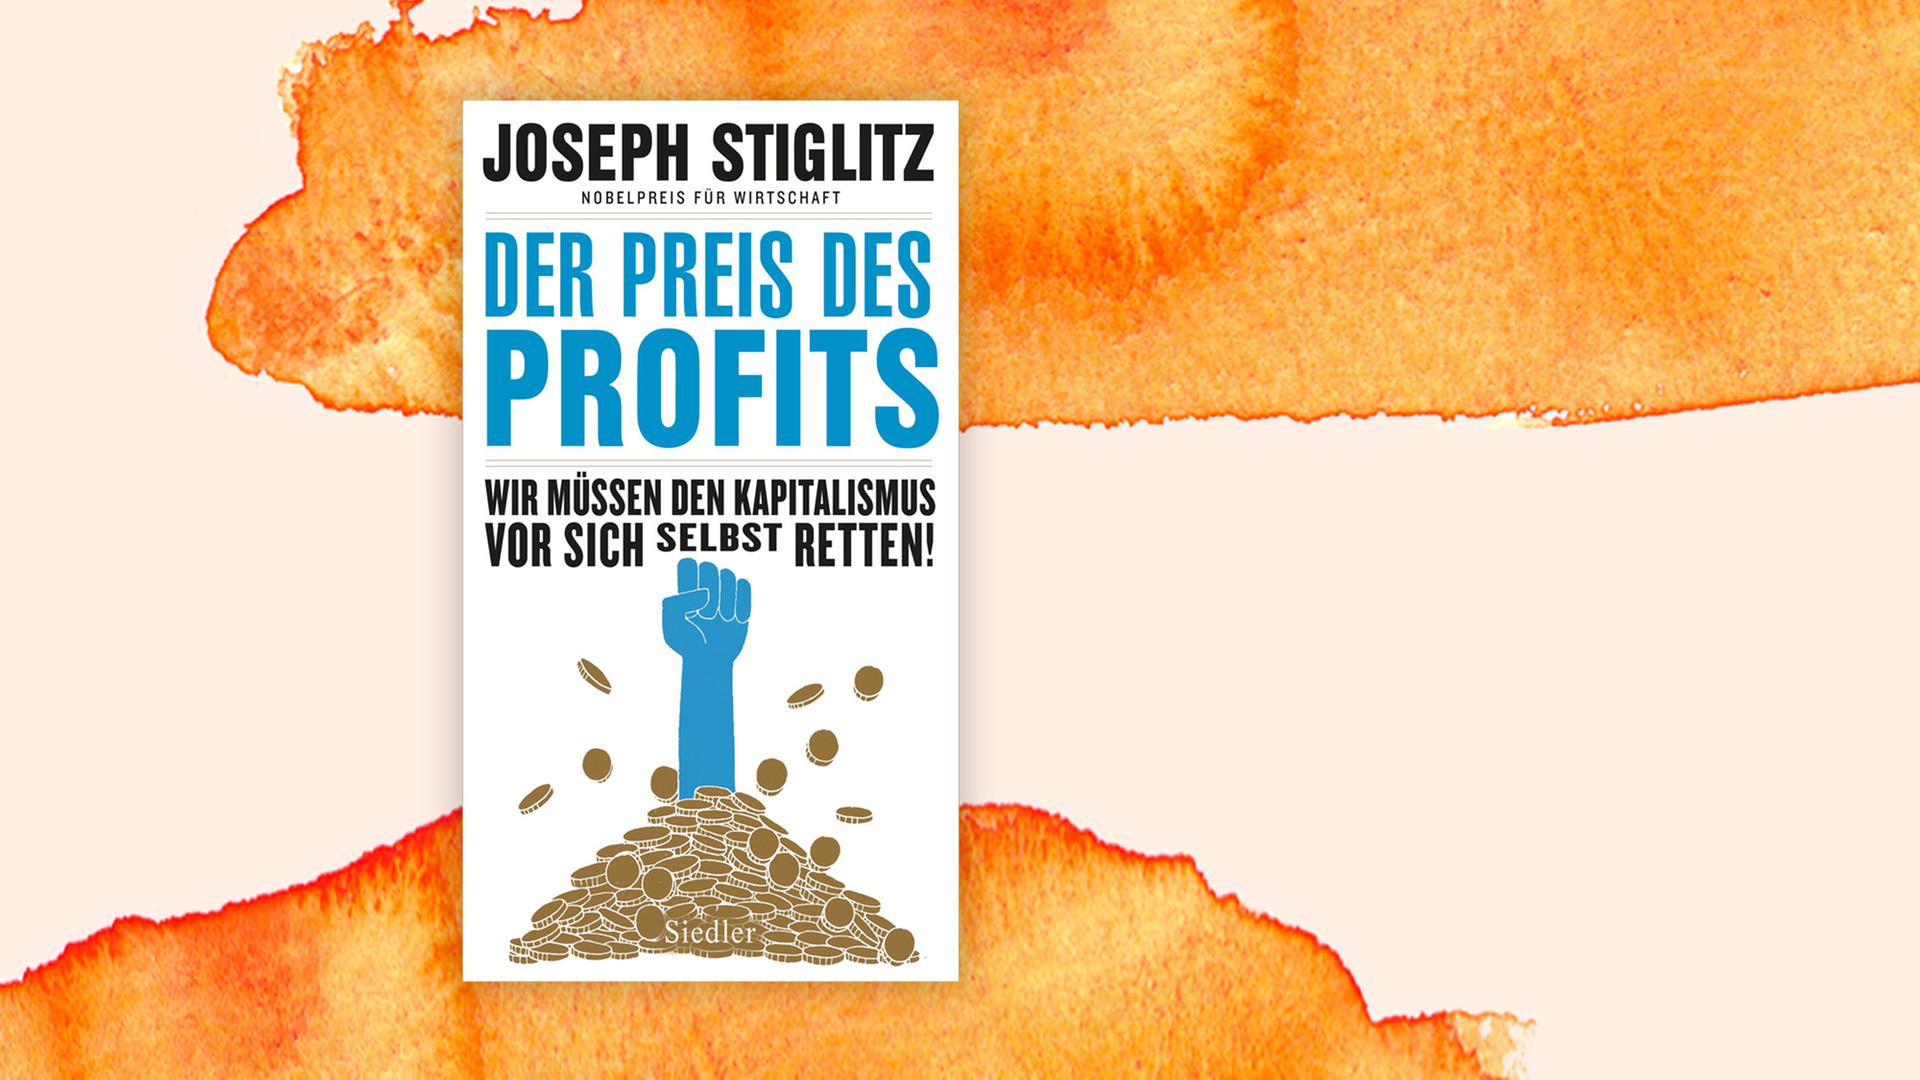 Das Buchcover von "Der Preis des Profits"